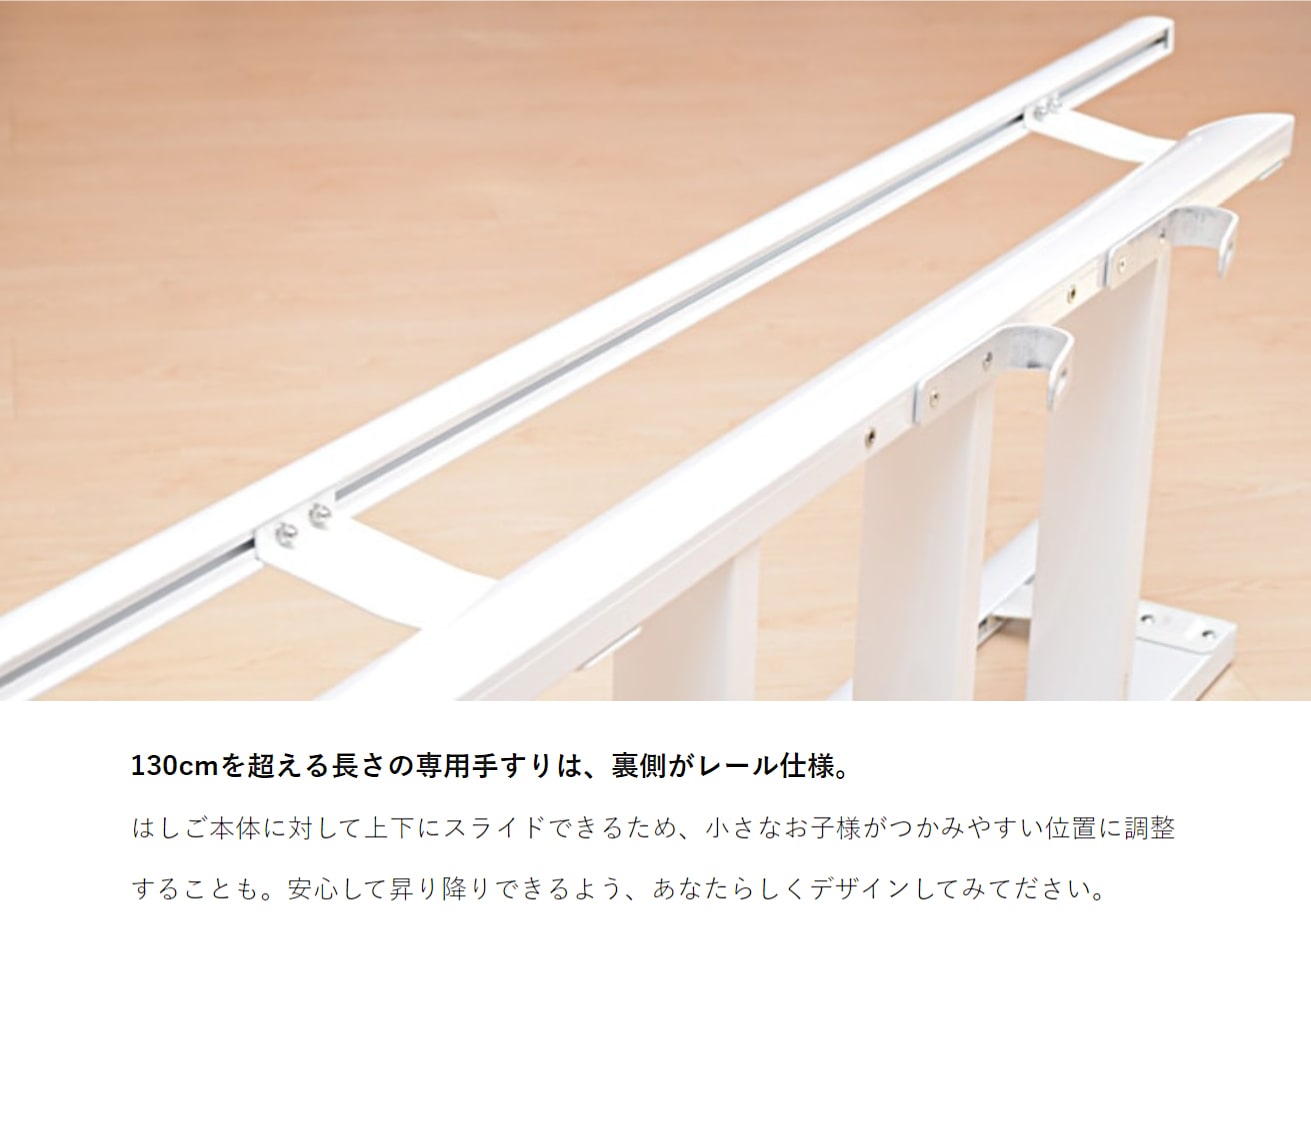 ルカーノラダー アルミ製ロフトはしご 梯子 ハシゴ 階段 ベッド 最軽量